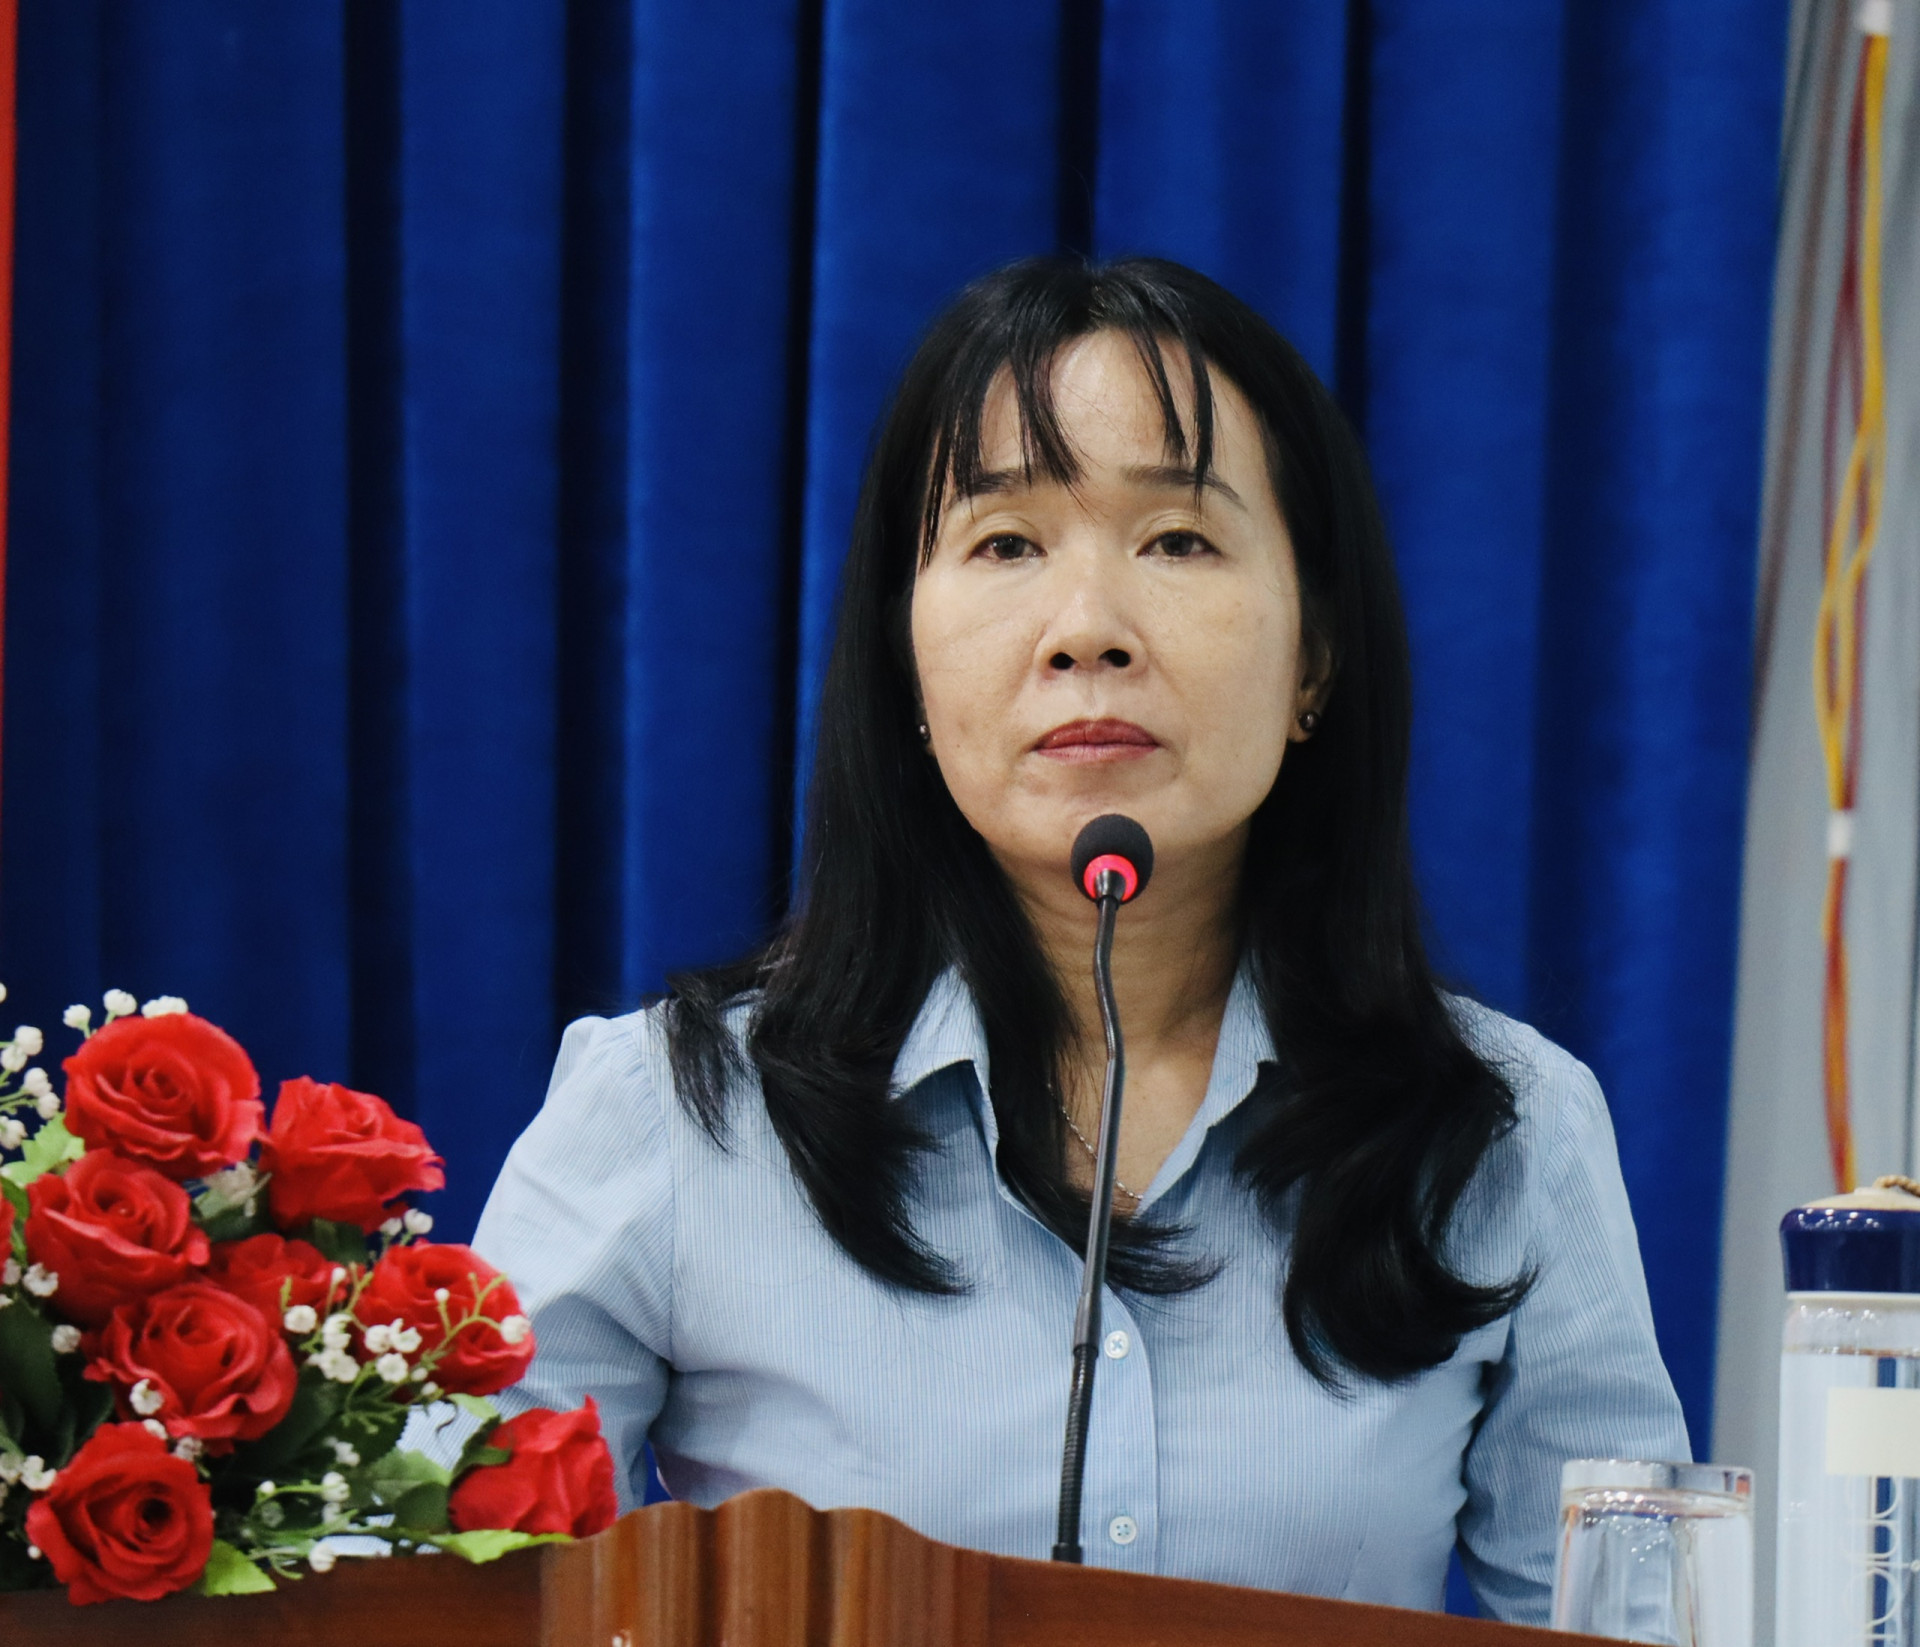 Đồng chí Nguyễn Thị Bích Liên - Phó Bí thư thường trực Đảng ủy Khối phát biểu khai mạc